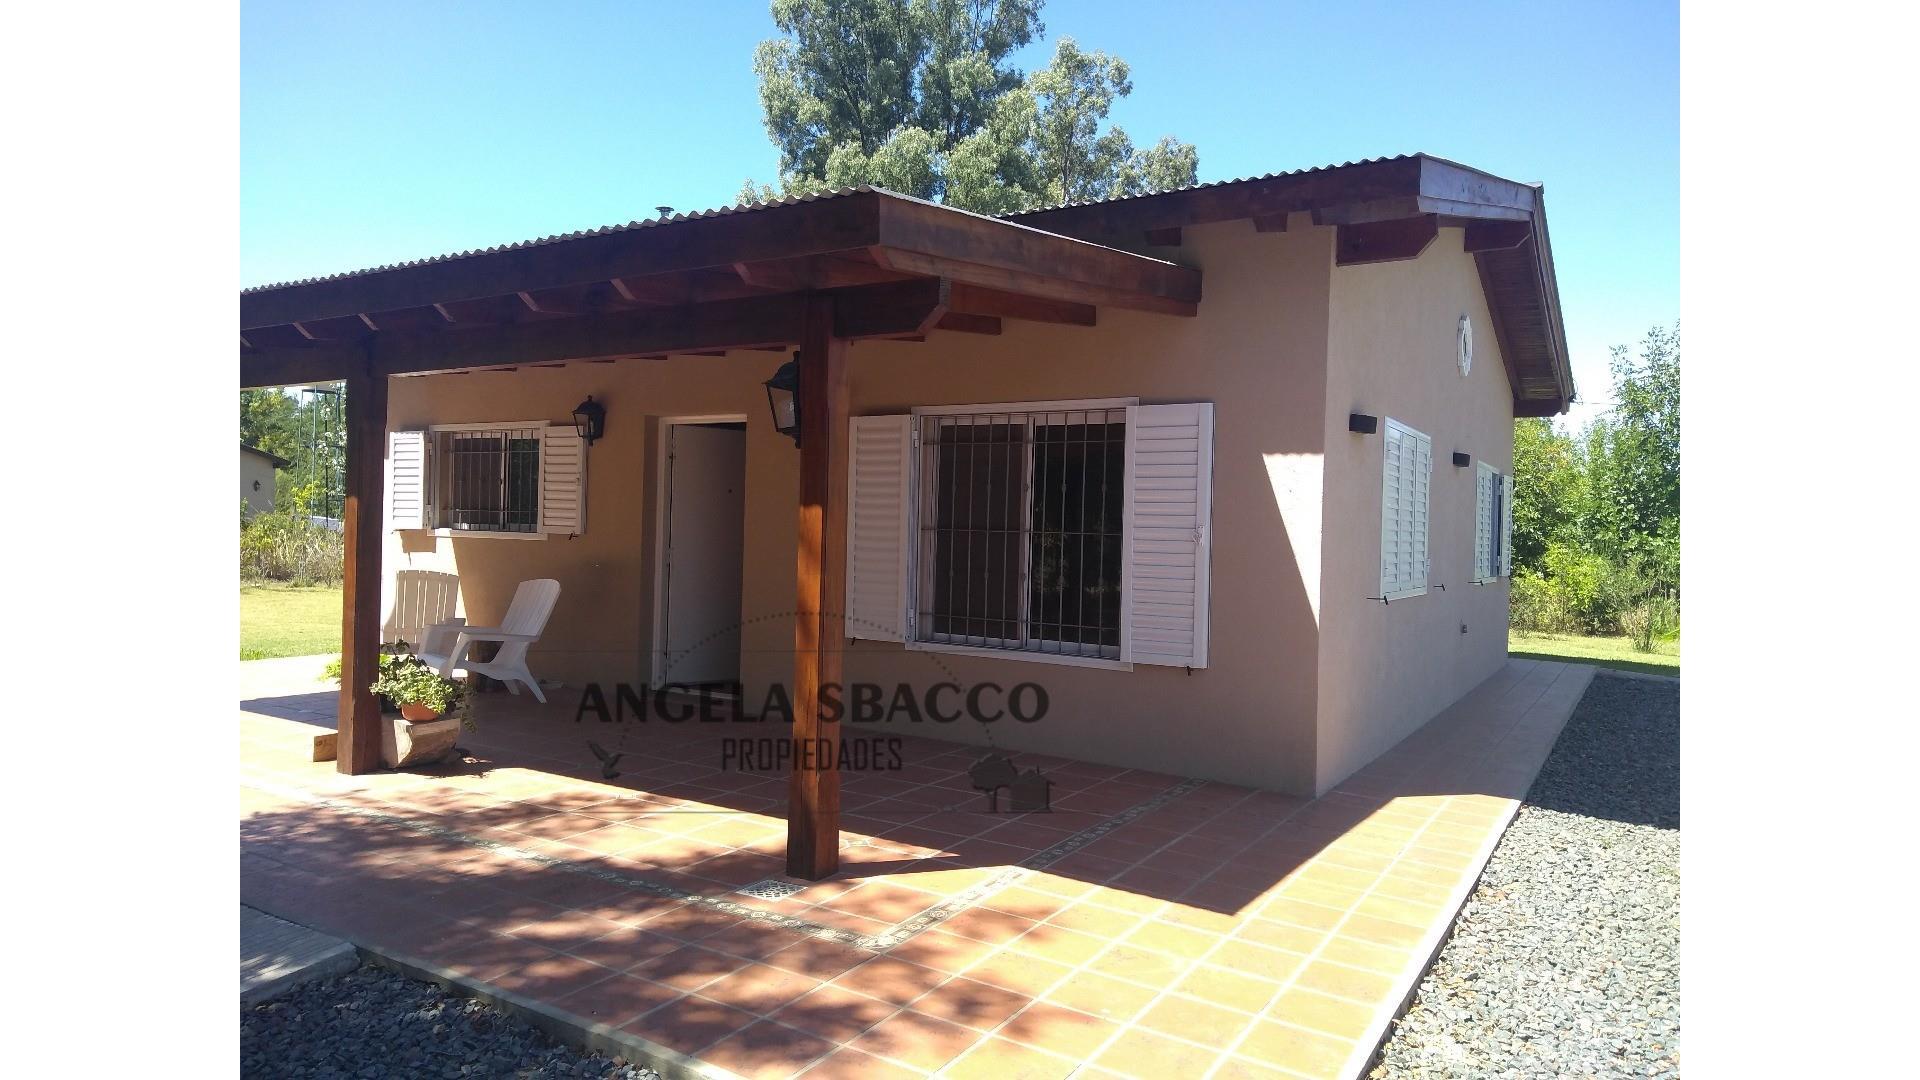 #2403653 | Venta | Casa | Exaltacion De La Cruz (Angela Sbacco)